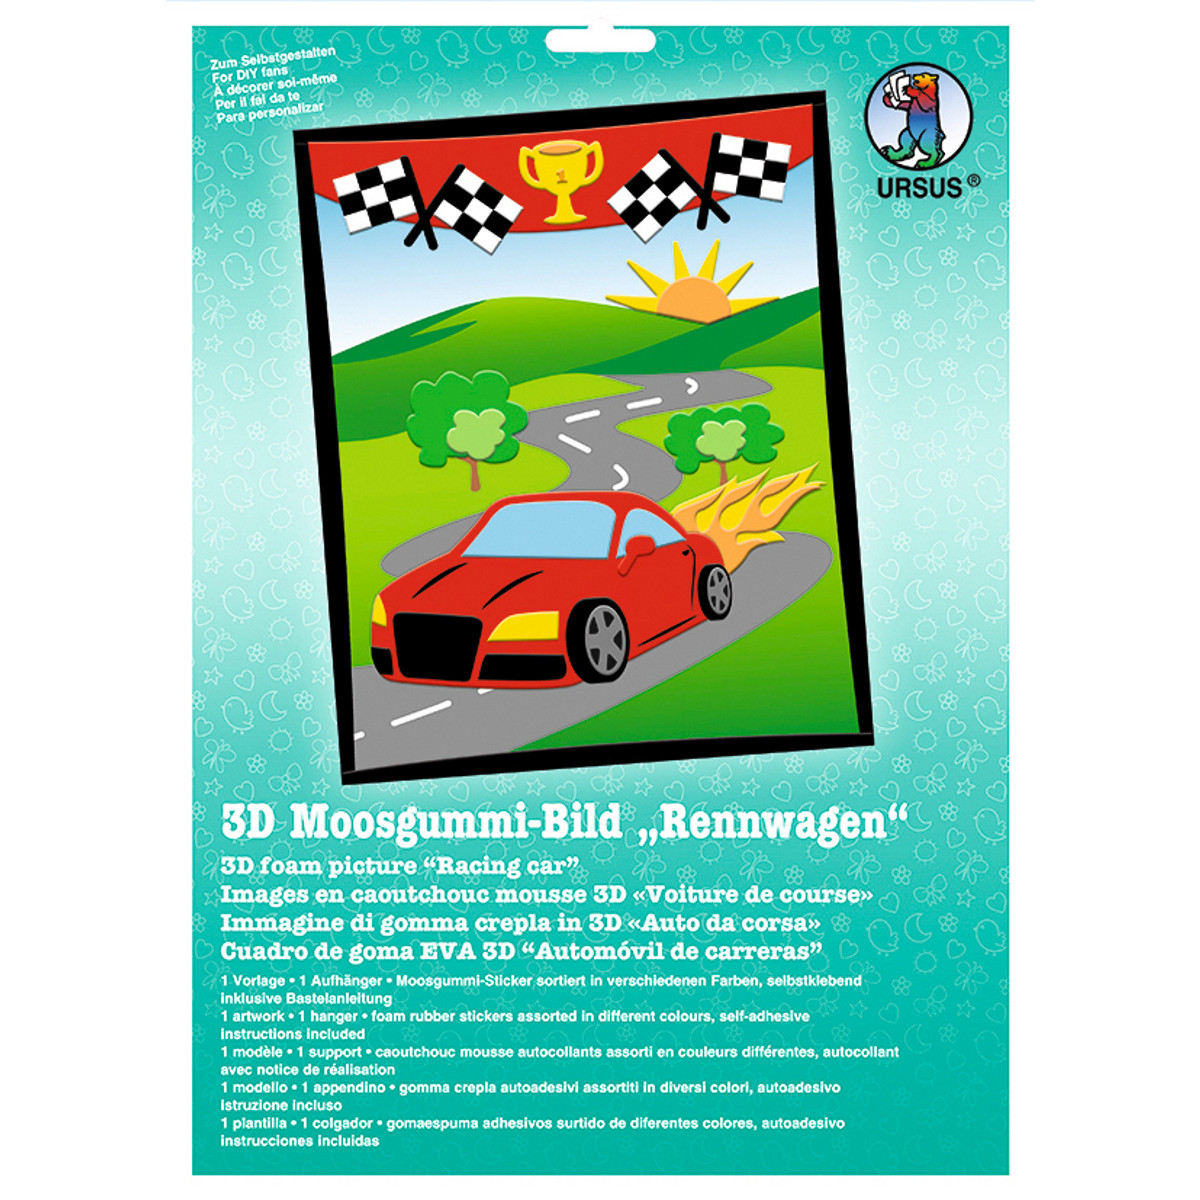 3D-Moosgummi-Bild "Rennwagen"